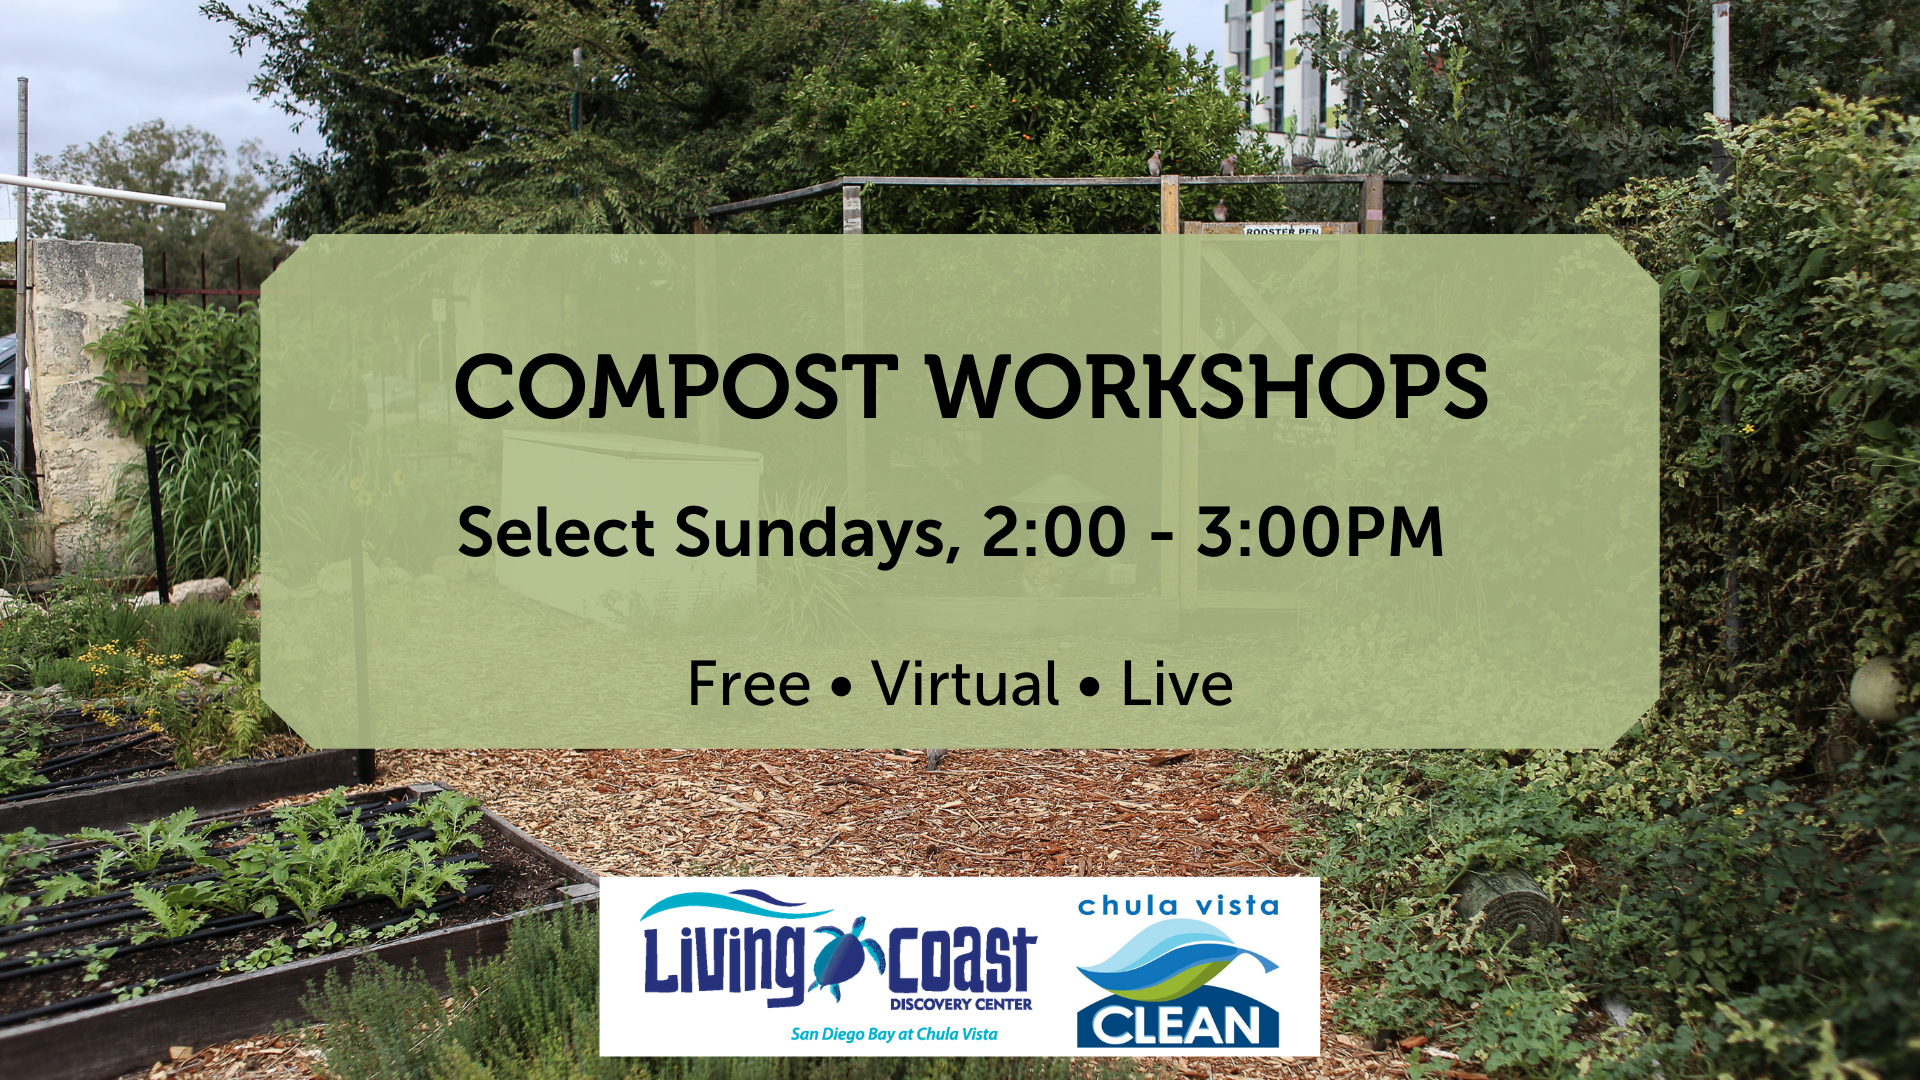 Compost workshops